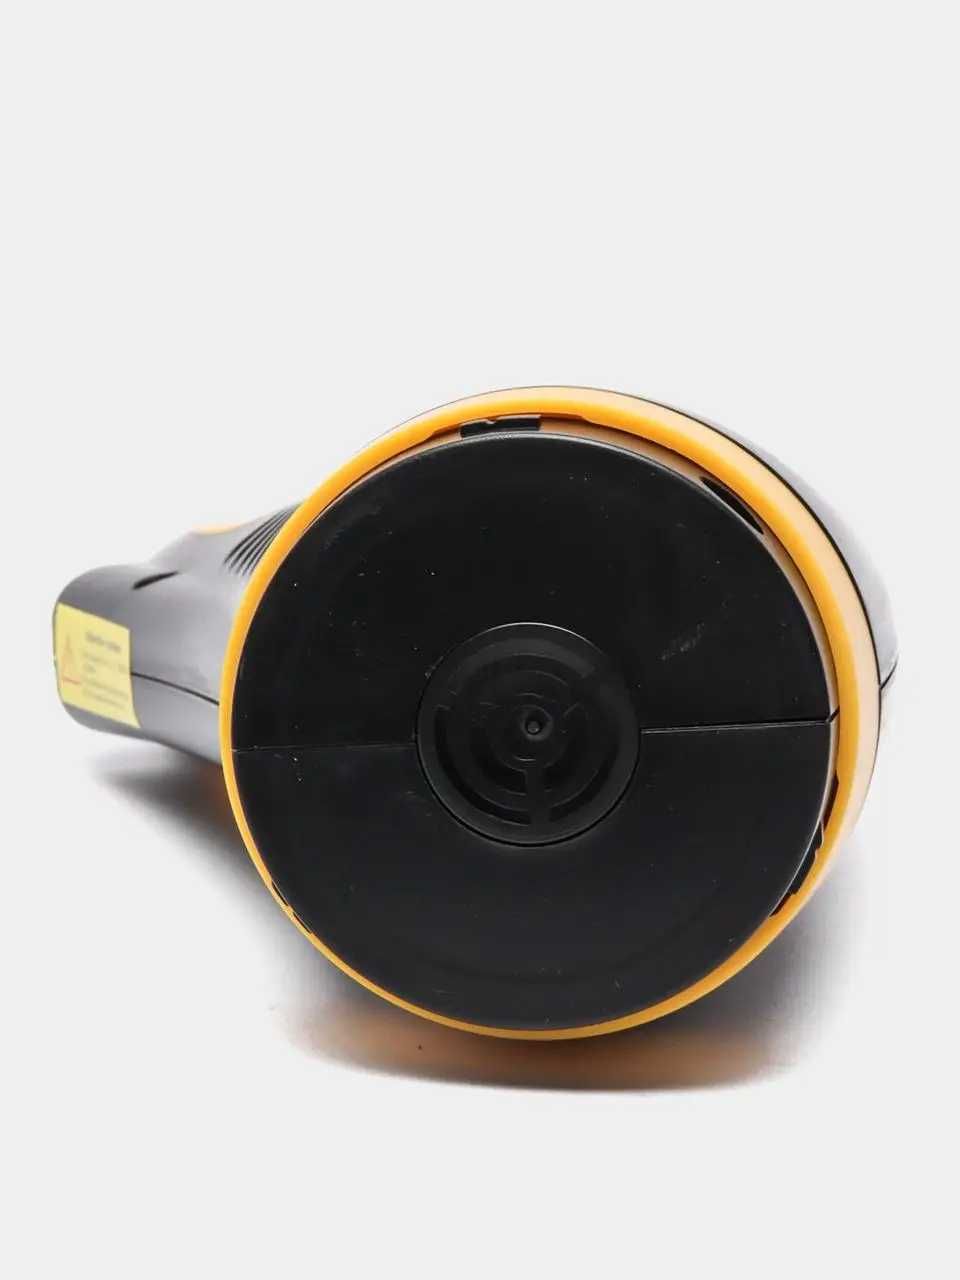 Беспроводной пылесос для авто Prokvel mini Vacuum cleaner 120W, 9000Па